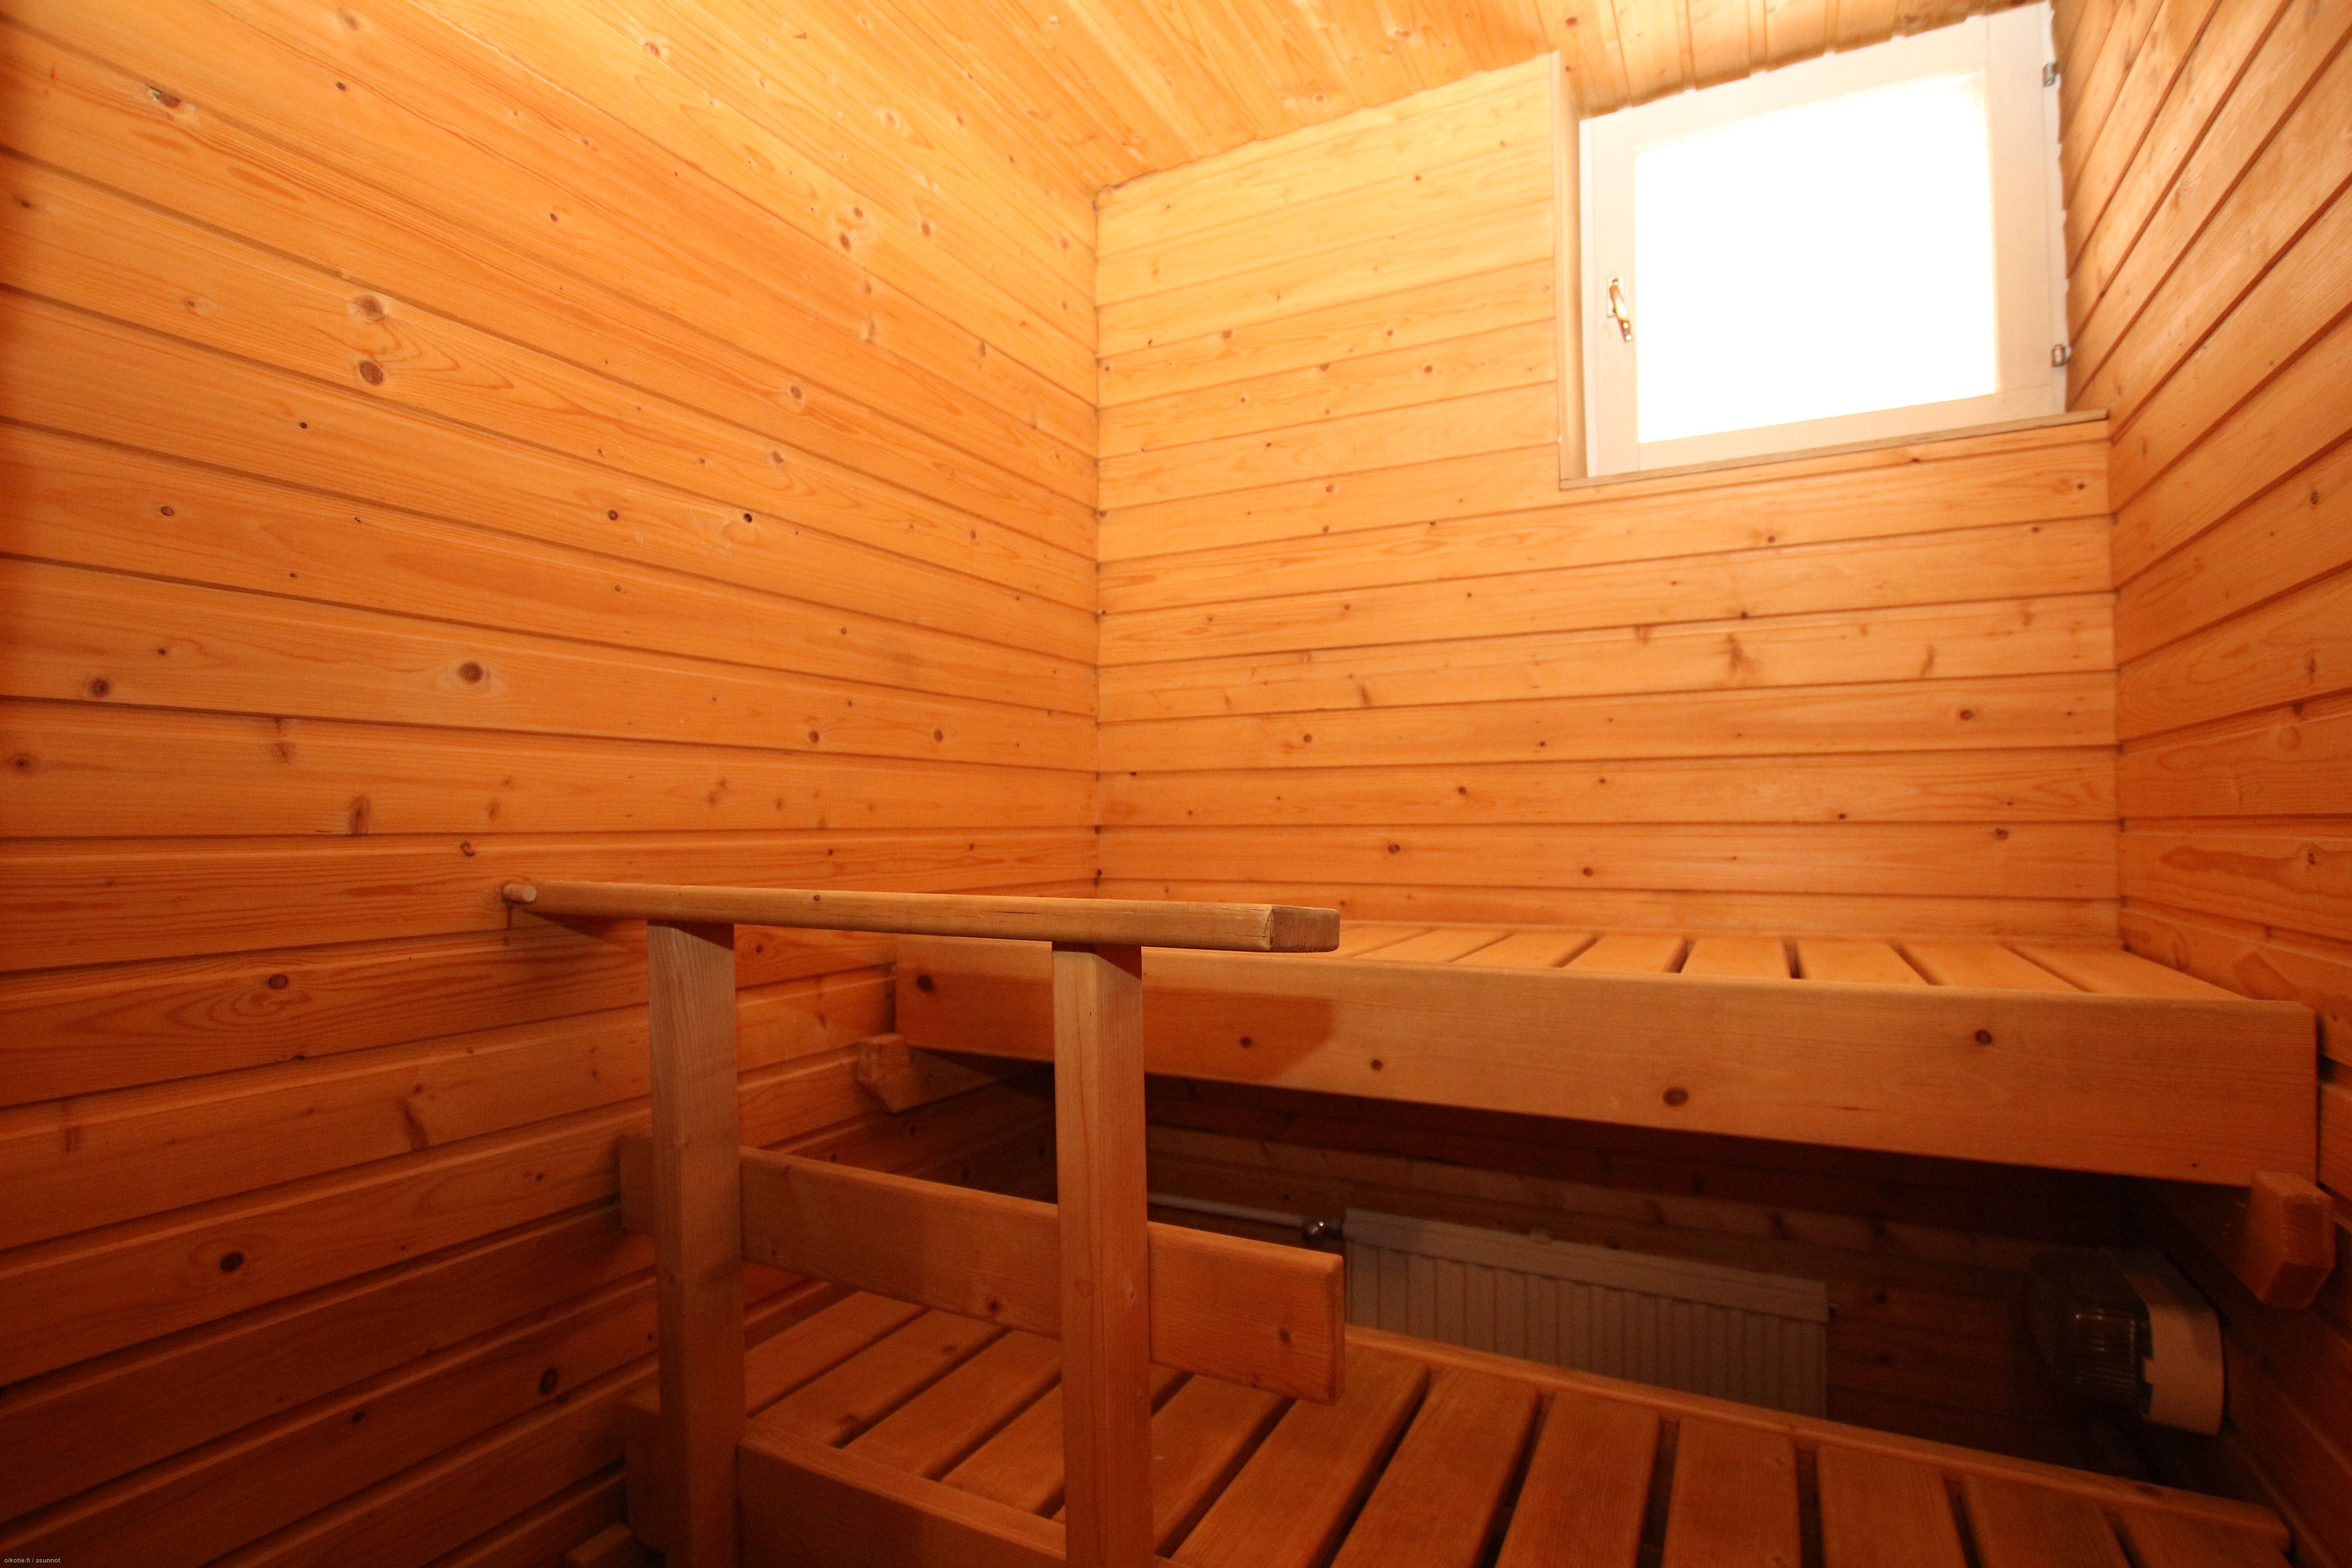  m² Vähäuusikatu 12 D, 28100 Pori 2h + k + sauna + parveke – Oikotie  17246810 – SKVL